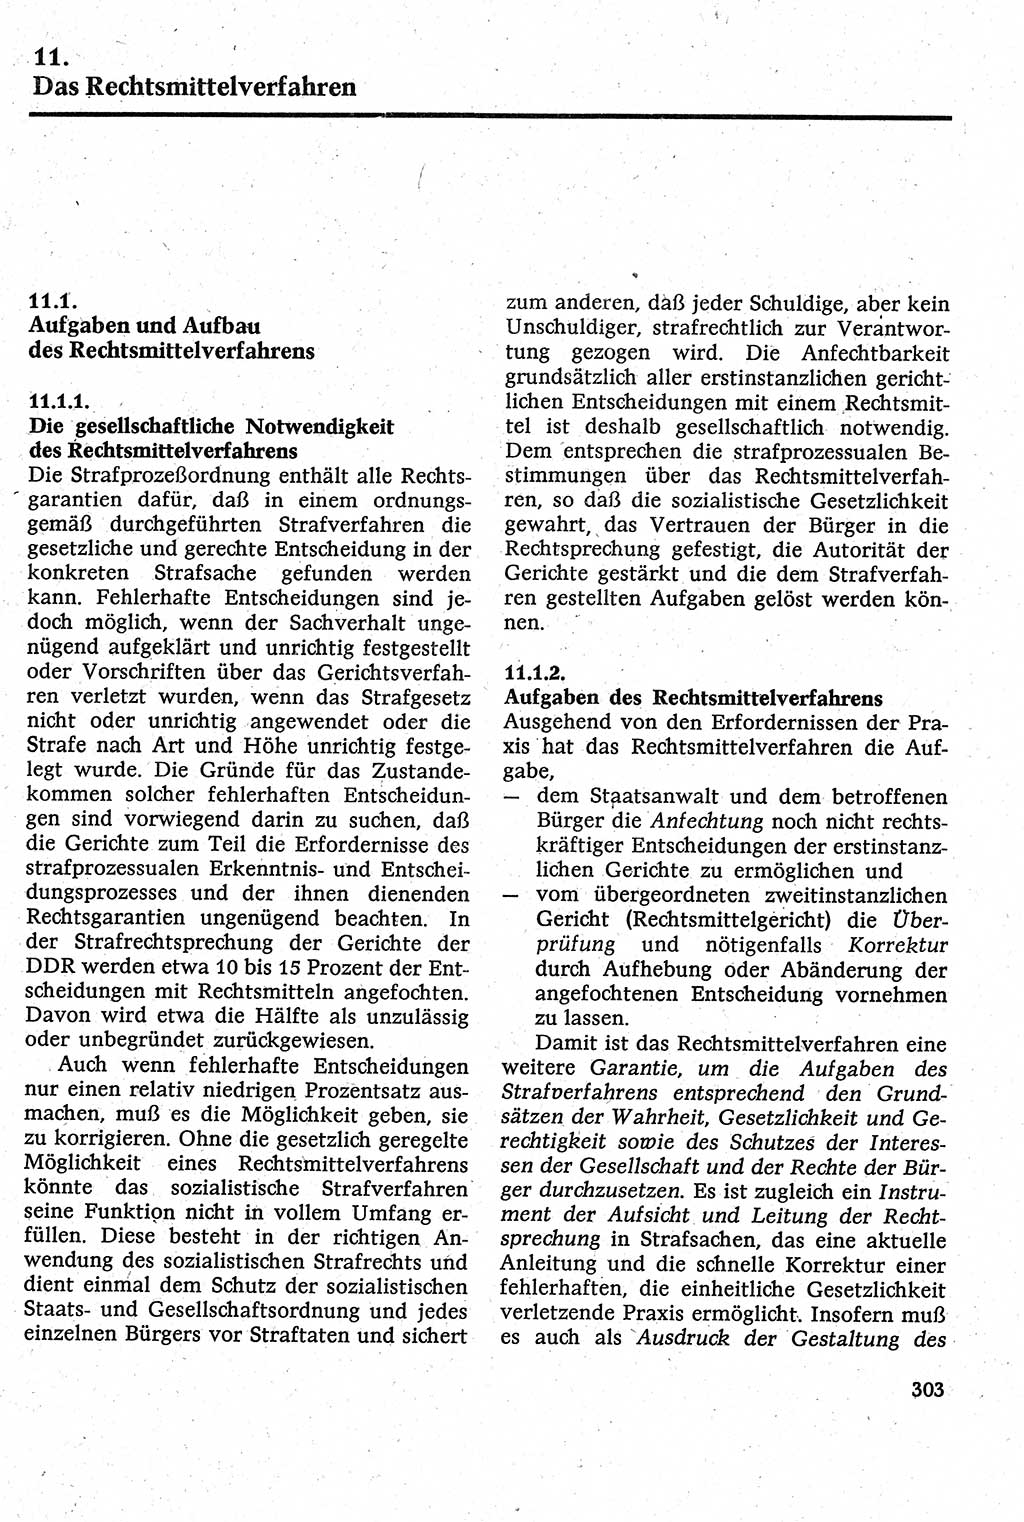 Strafverfahrensrecht [Deutsche Demokratische Republik (DDR)], Lehrbuch 1982, Seite 303 (Strafverf.-R. DDR Lb. 1982, S. 303)